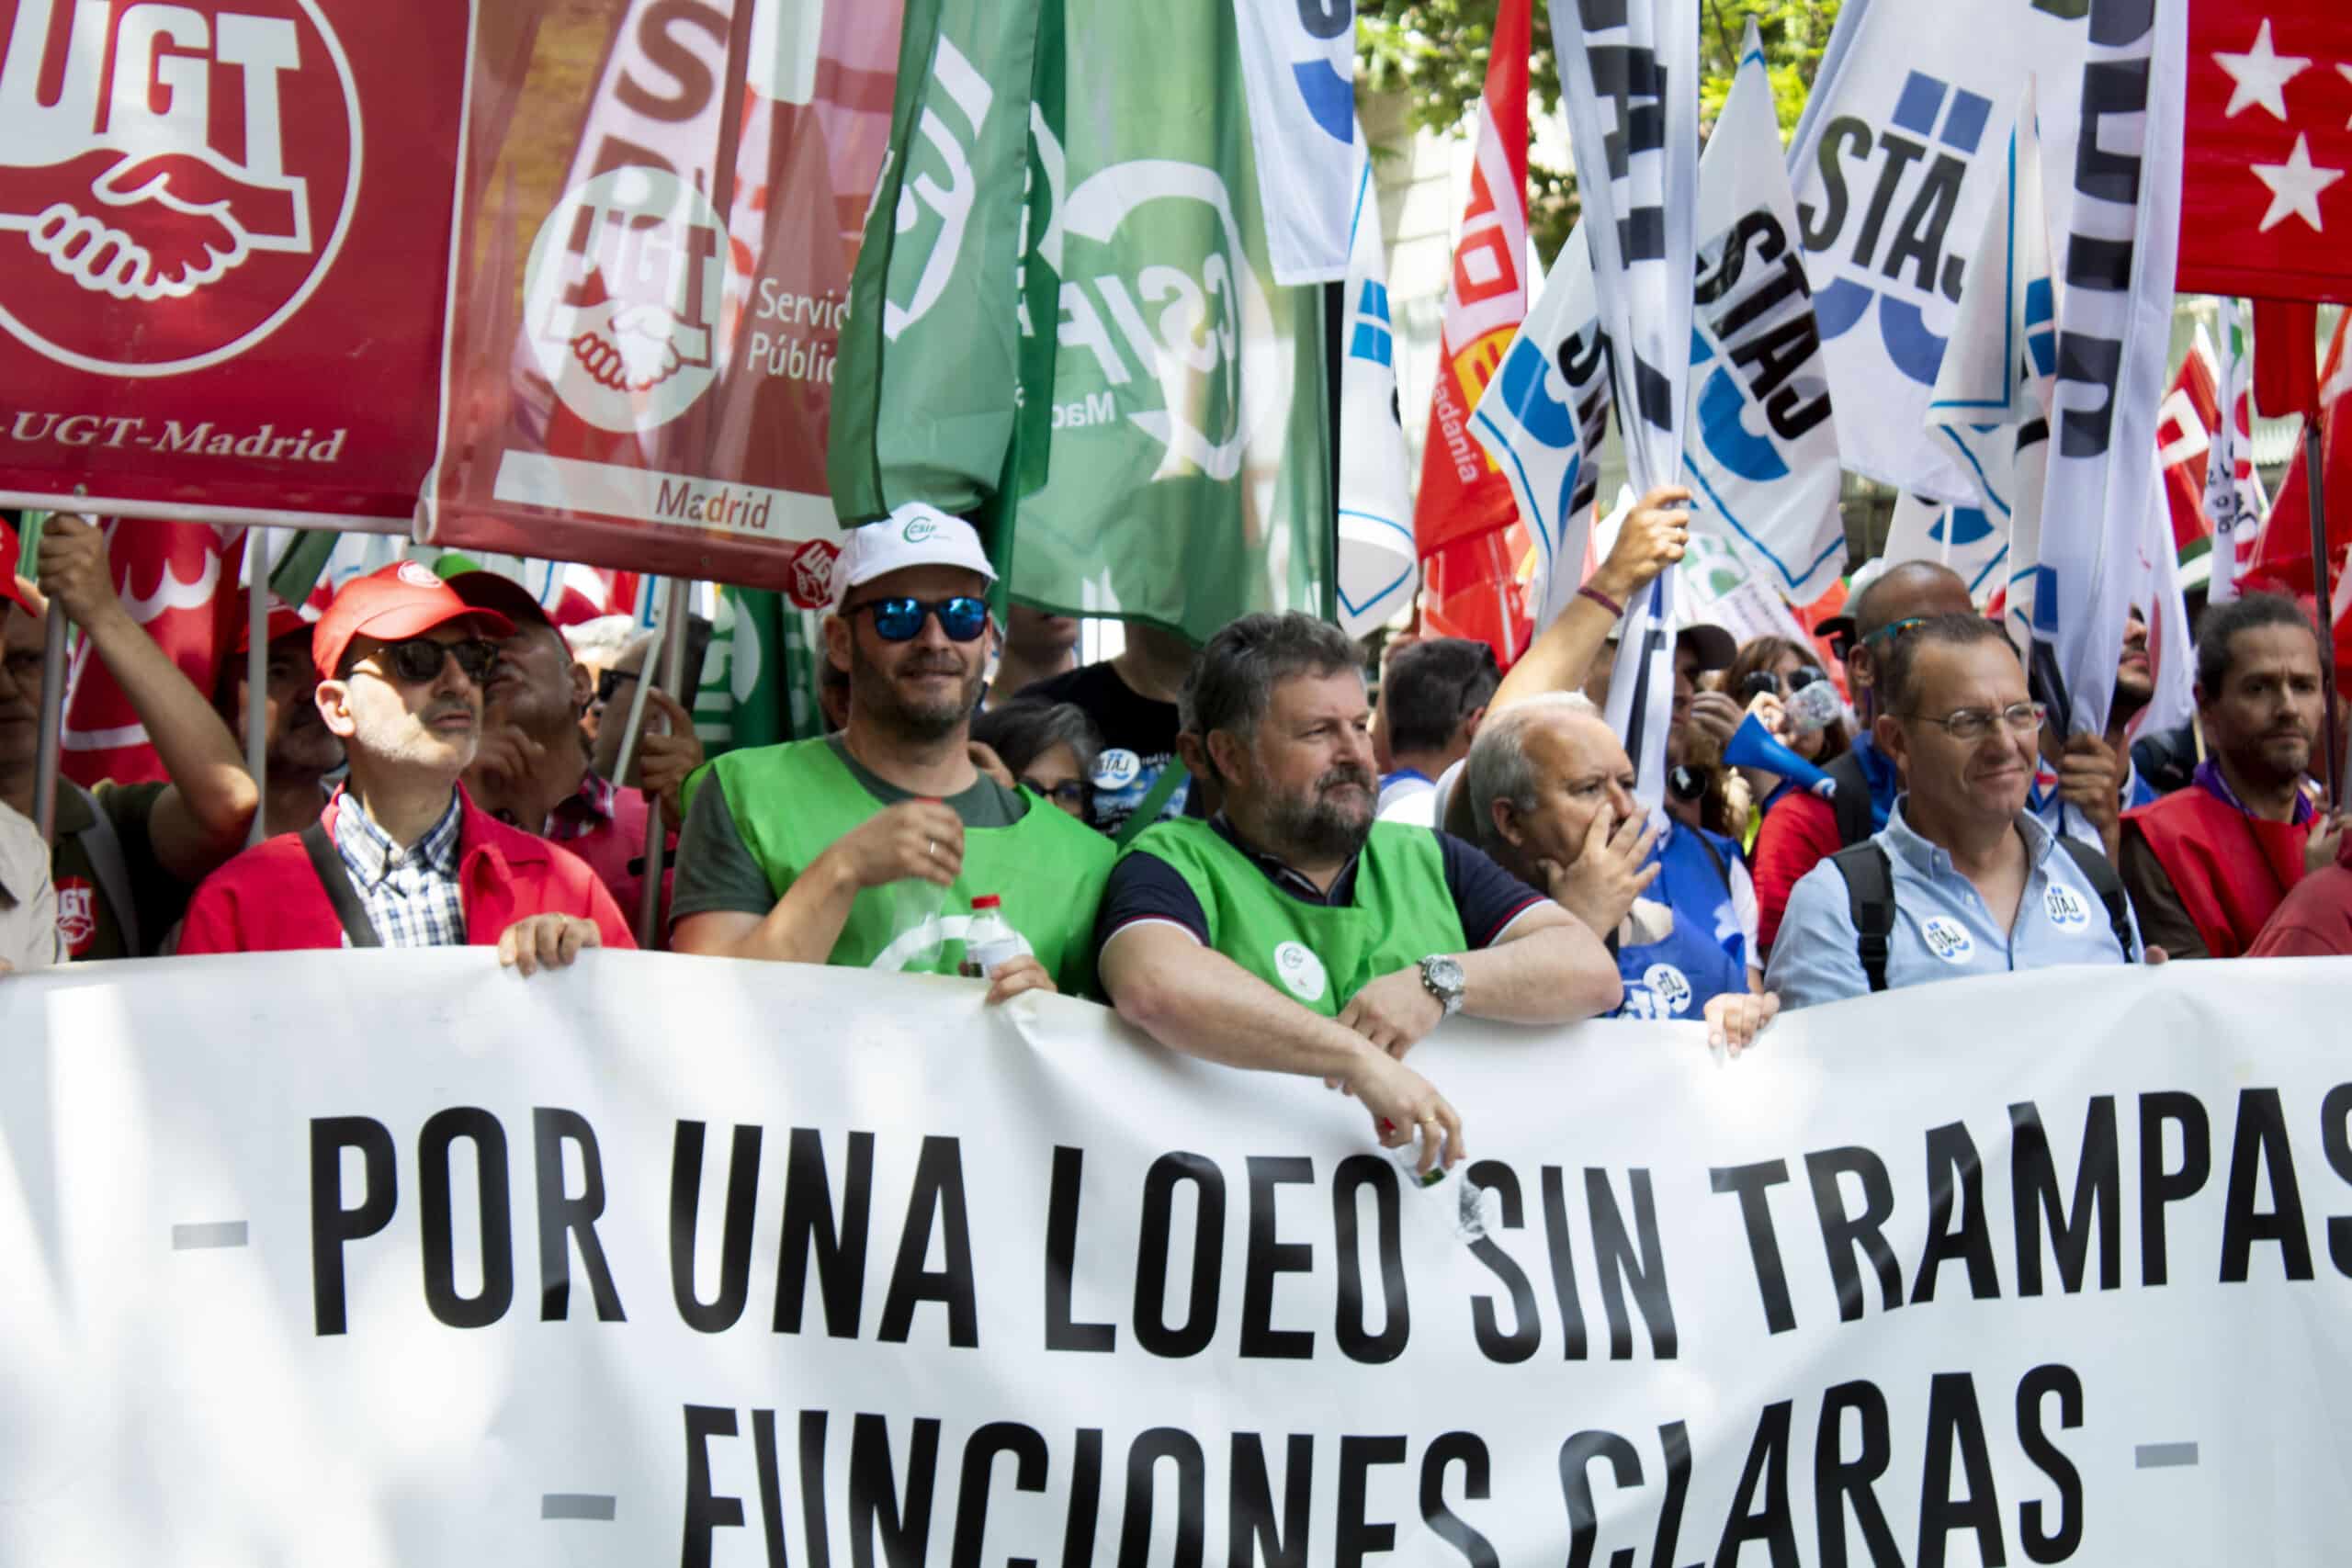 El comité de huelga de los funcionarios denunciará a Llop y Tontxu Rodríguez ante la Fiscalía del Supremo